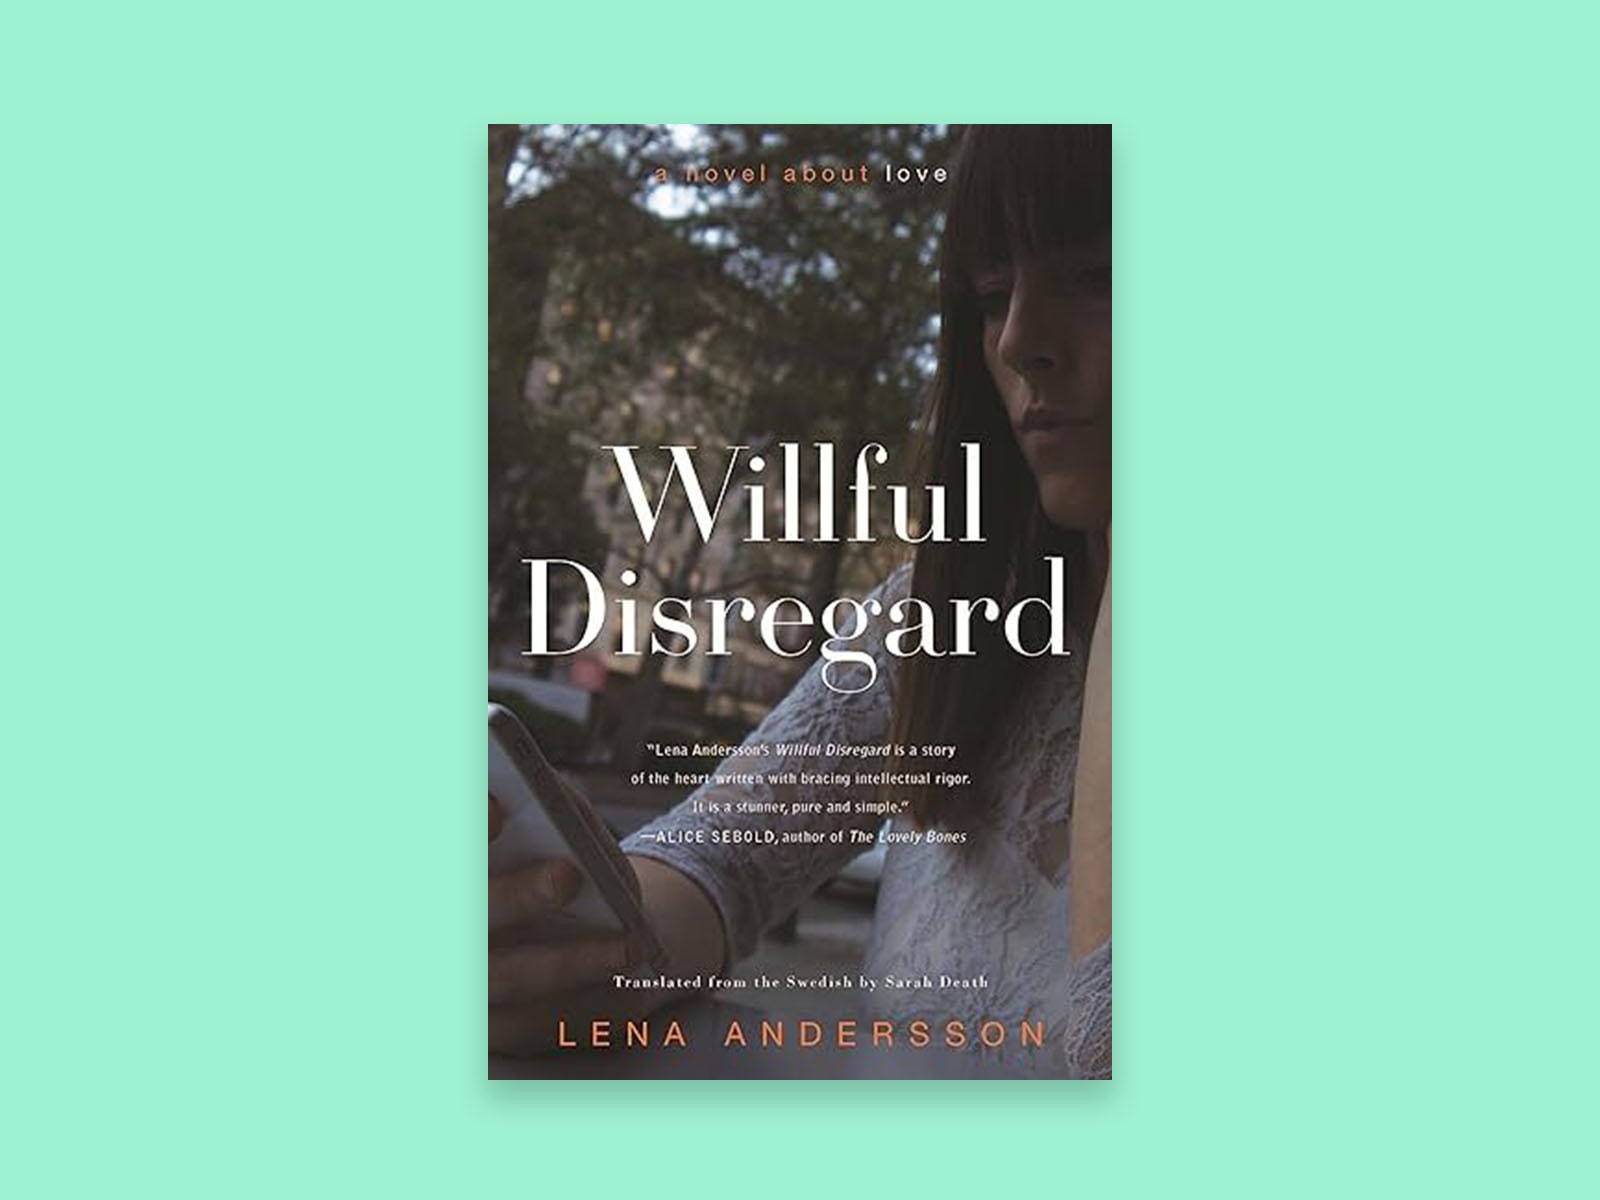 Buchcover von „Willful Disregard“ auf grünem Hintergrund.